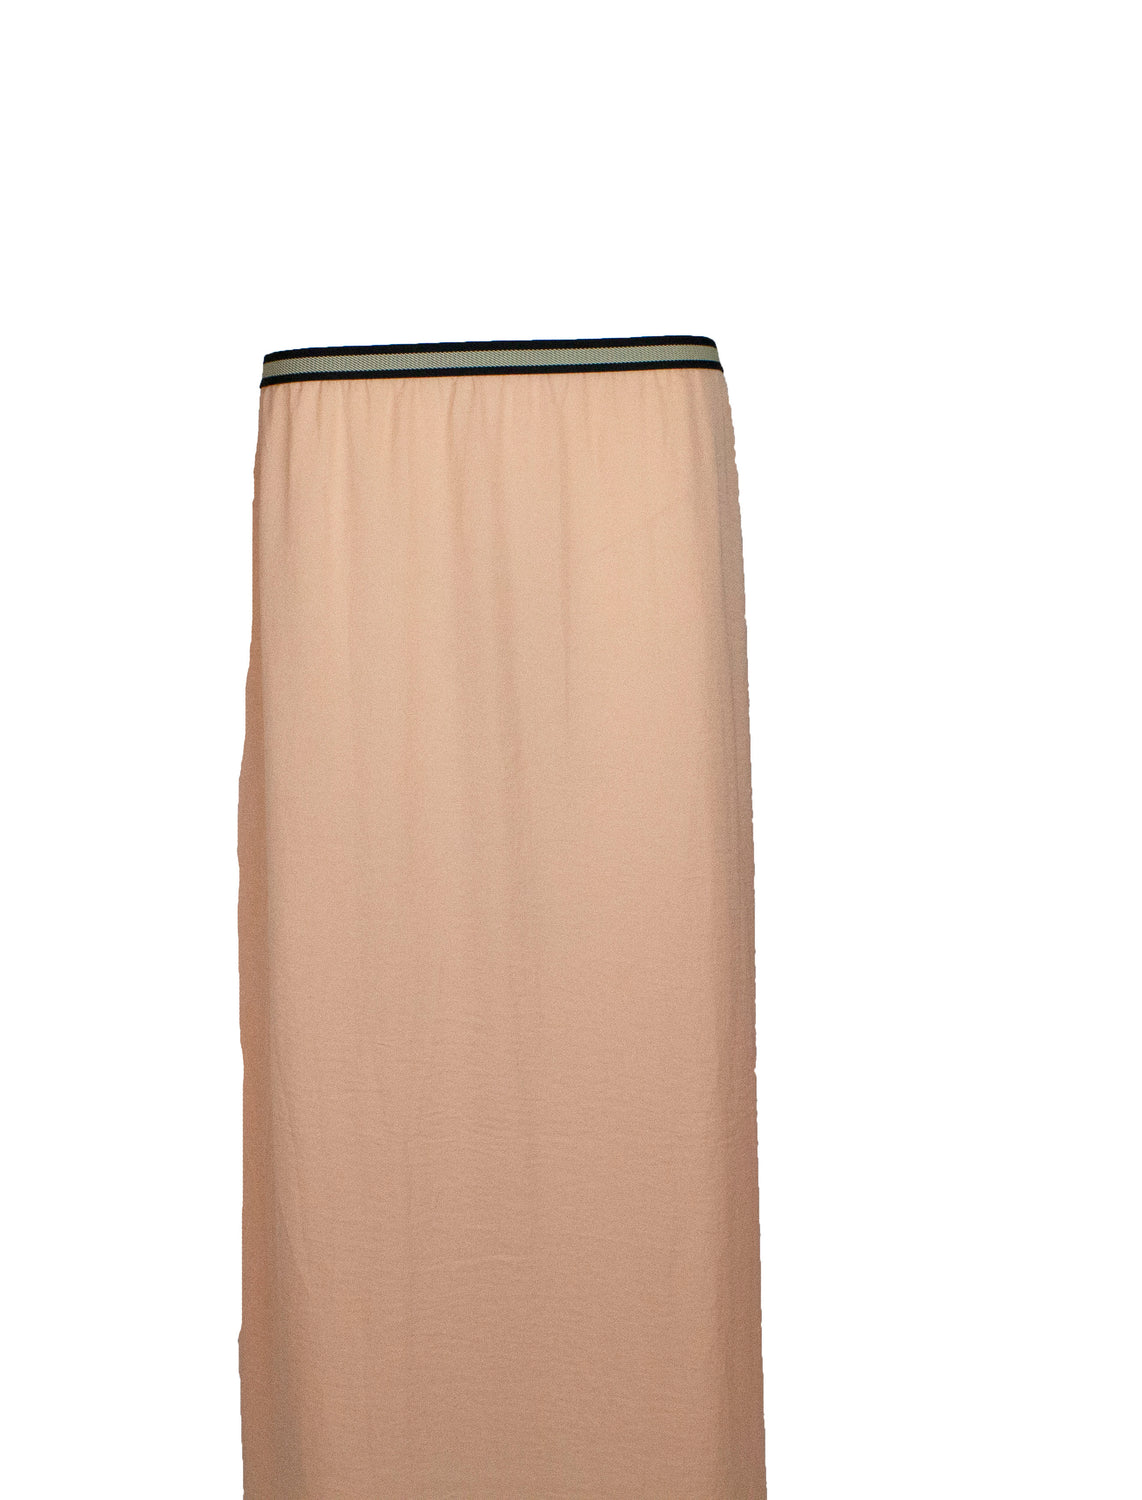 light pink peach maxi skirt with a waist band